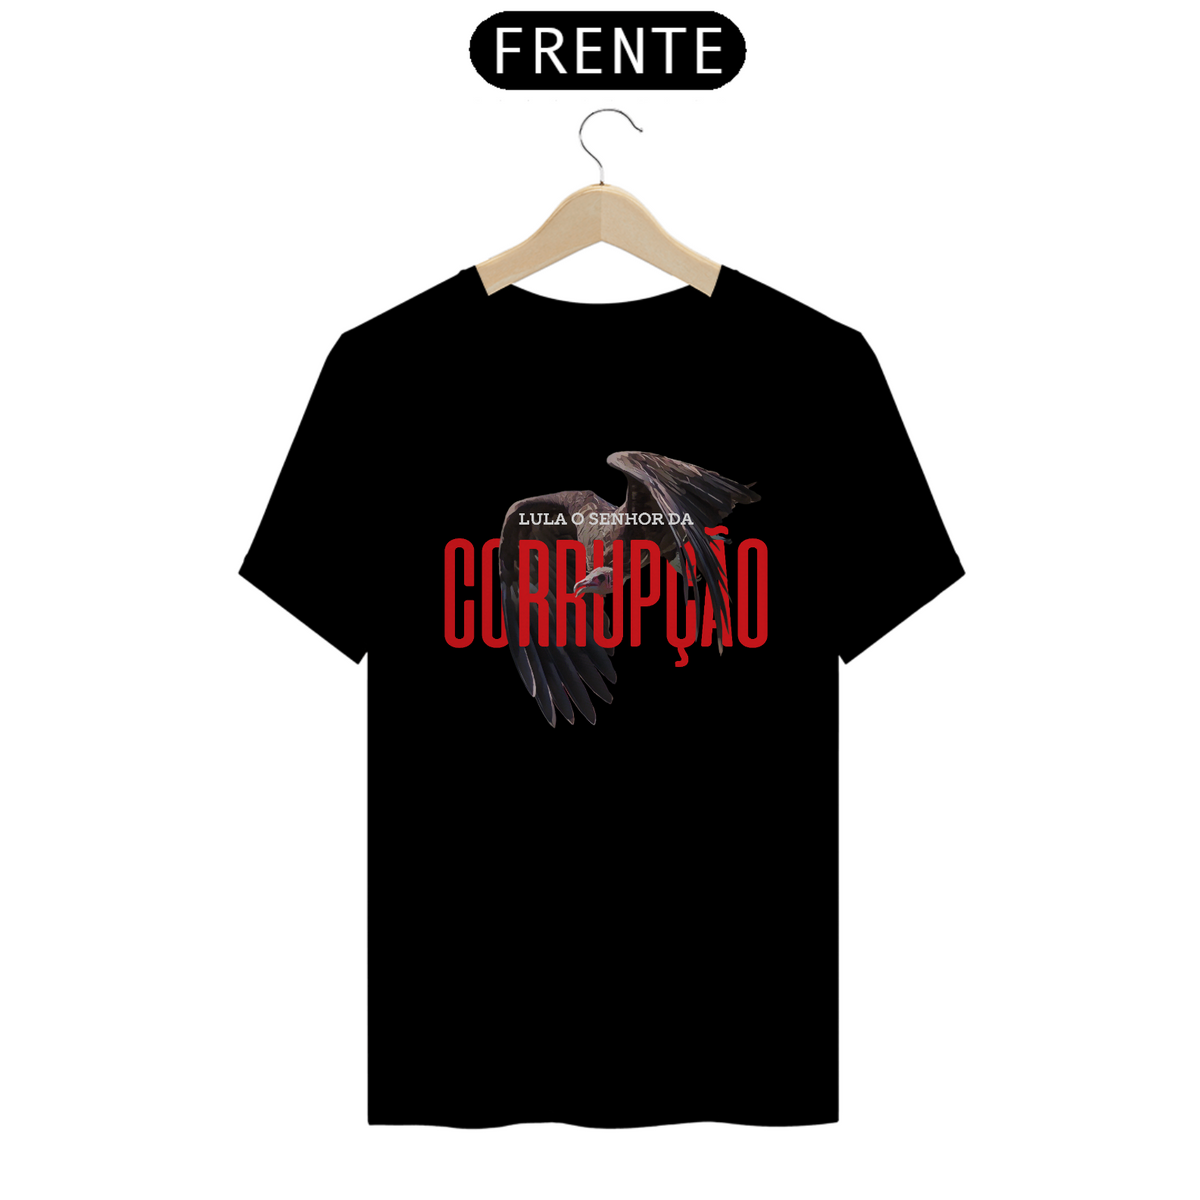 Nome do produto: Camiseta T-Shirt Quality Unissex / Lula o Senhor da Corrupção